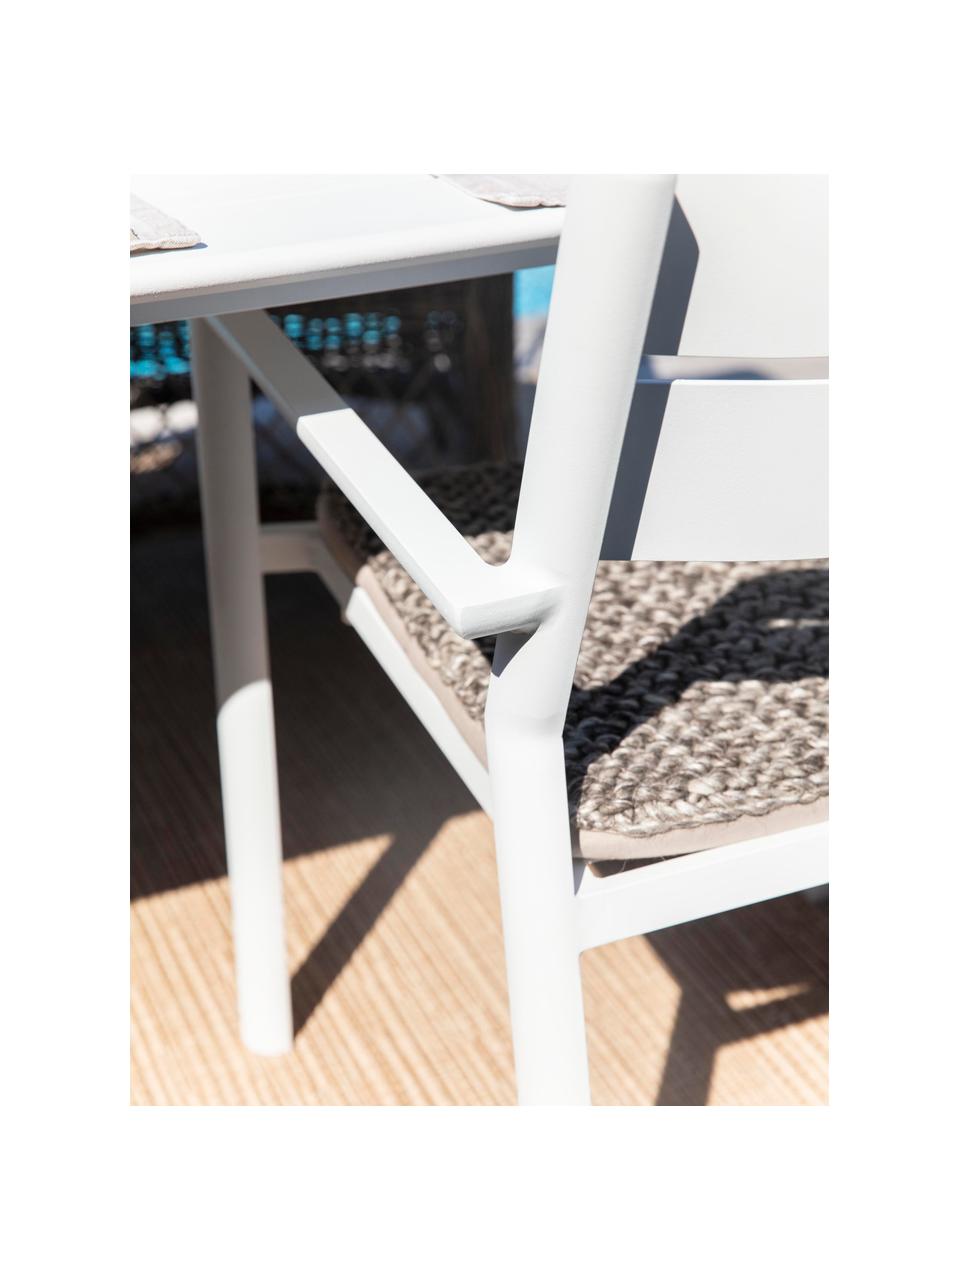 Stohovatelná zahradní židle Delia, Hliník s práškovým nástřikem, Bílá, Š 55 cm, H 55 cm